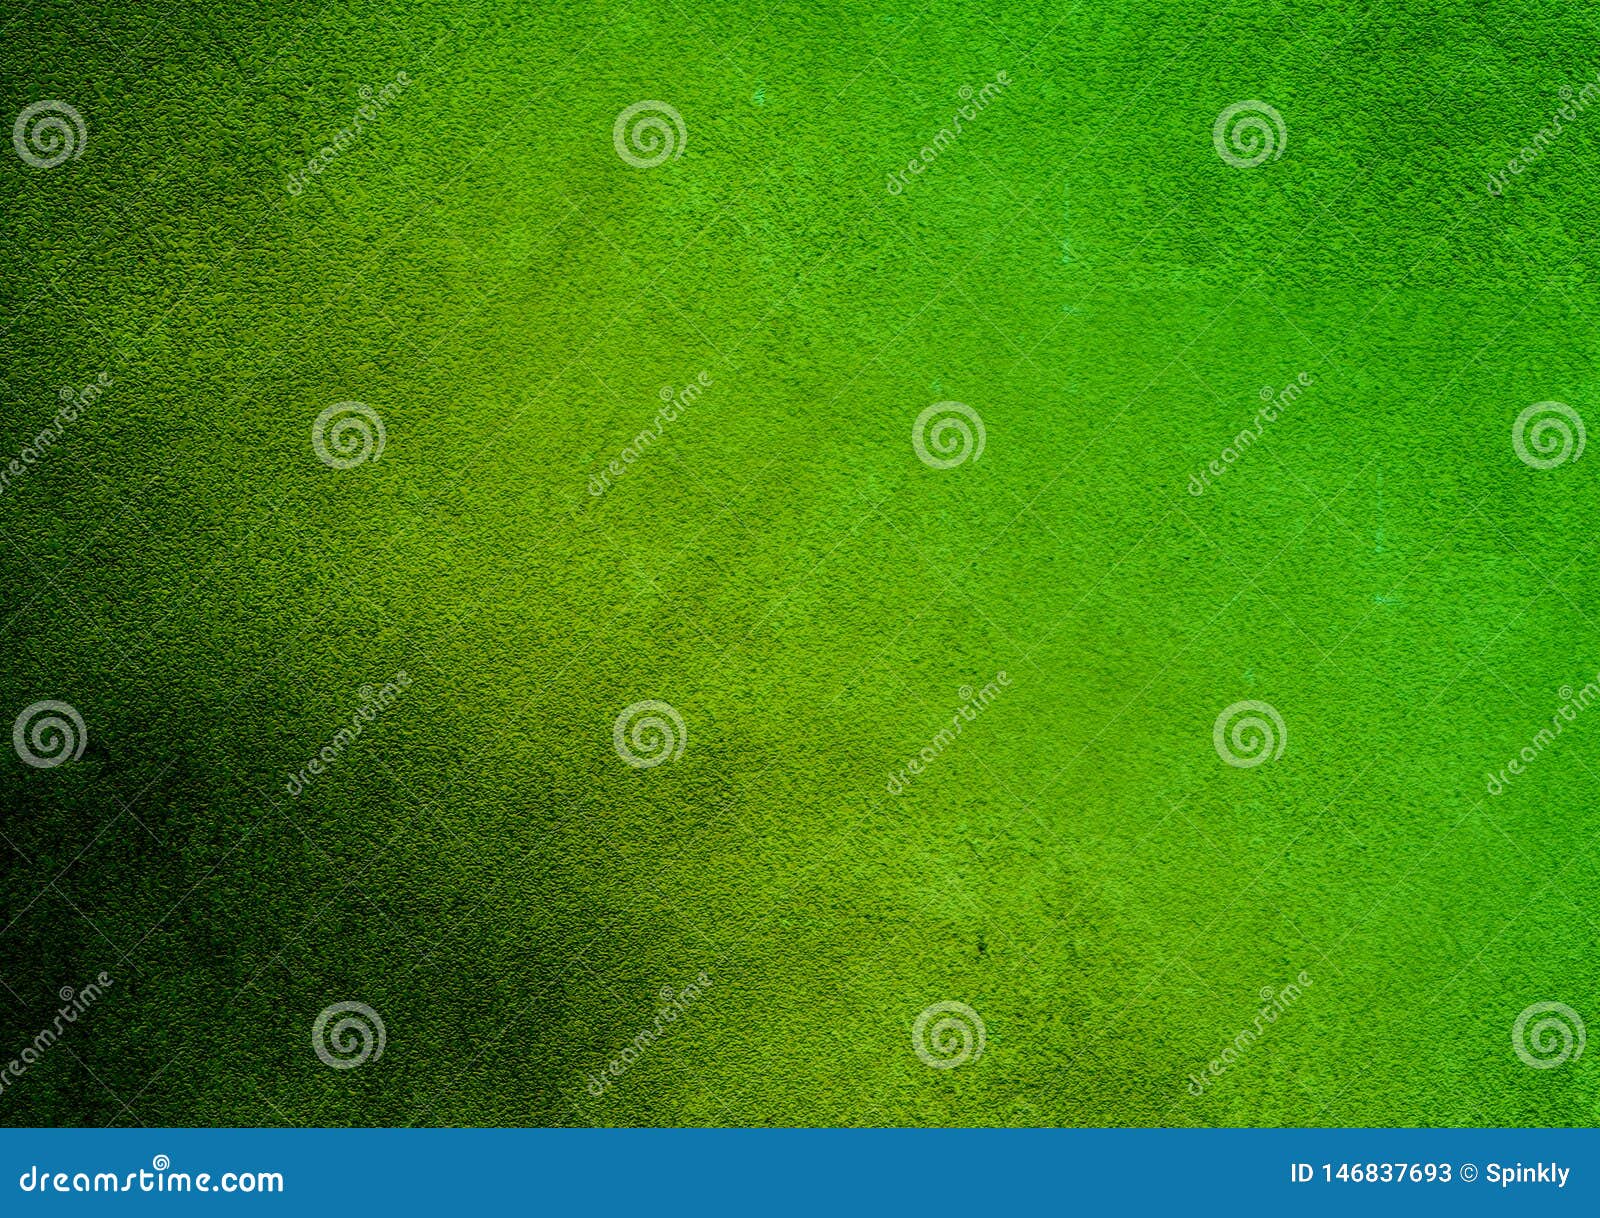 48 Light Green Textured Wallpaper  WallpaperSafari